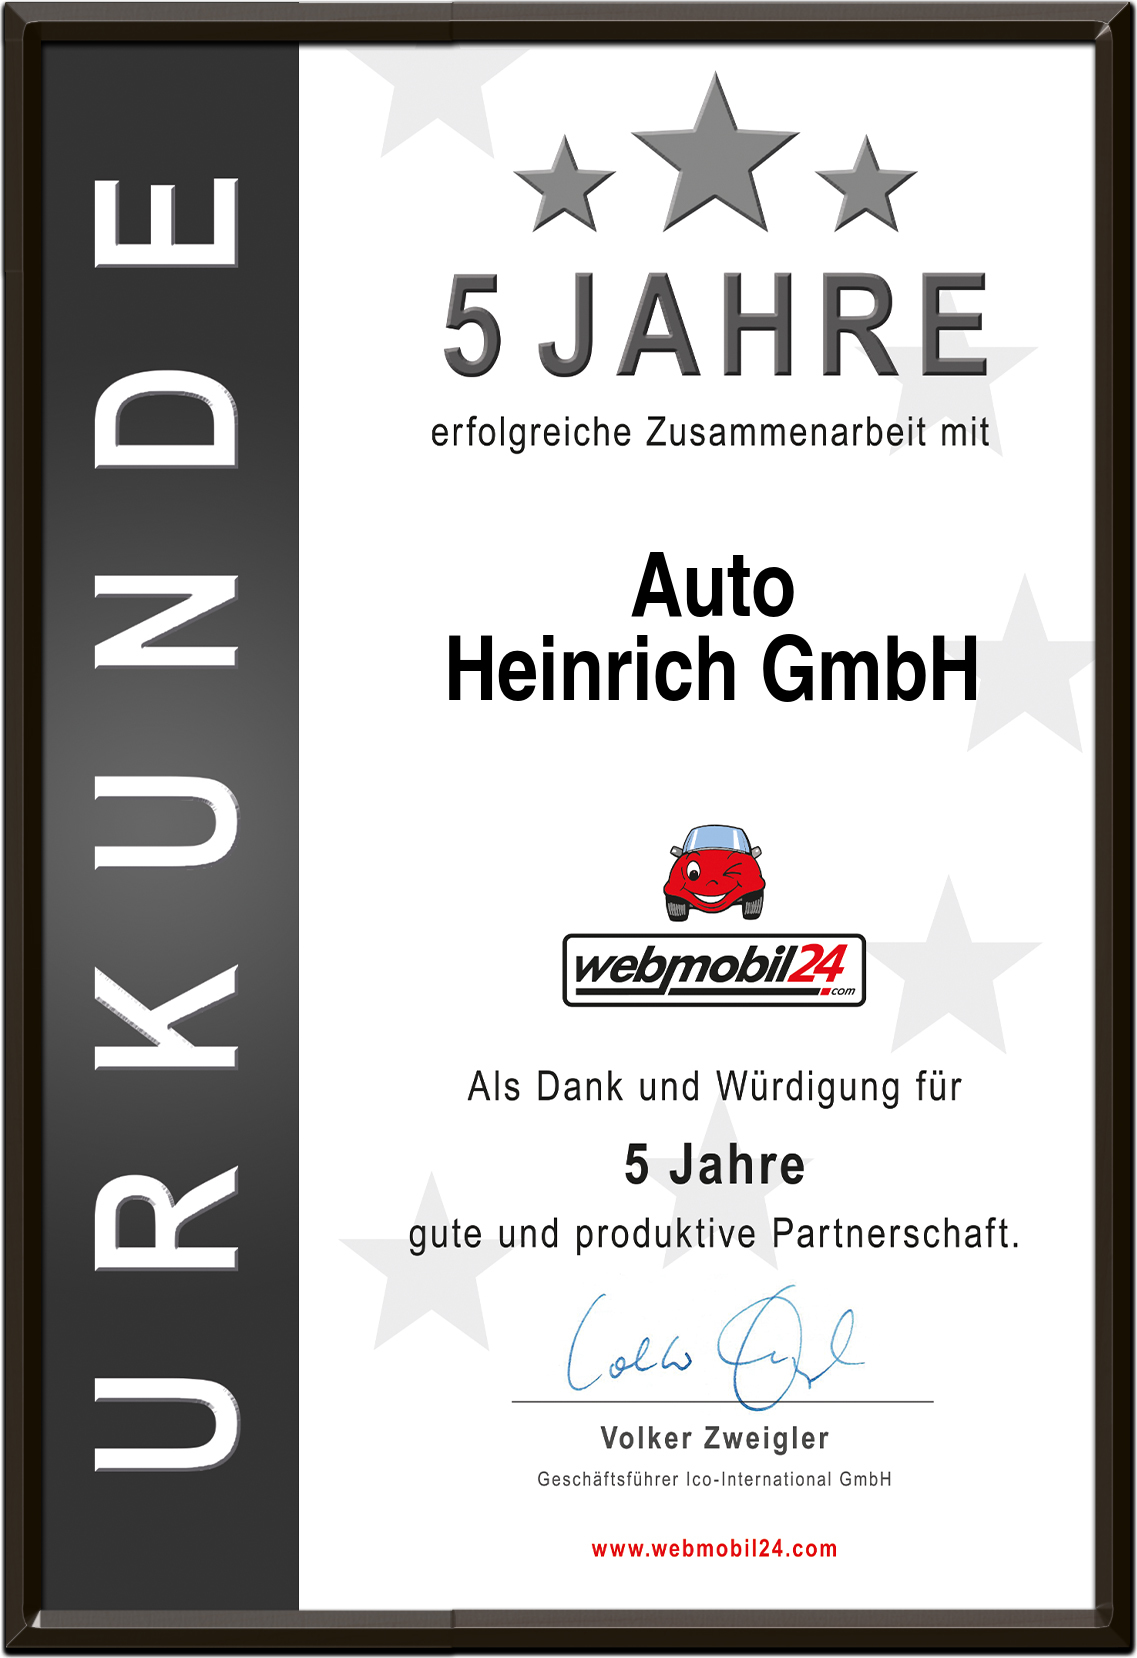 Auto
Heinrich GmbH